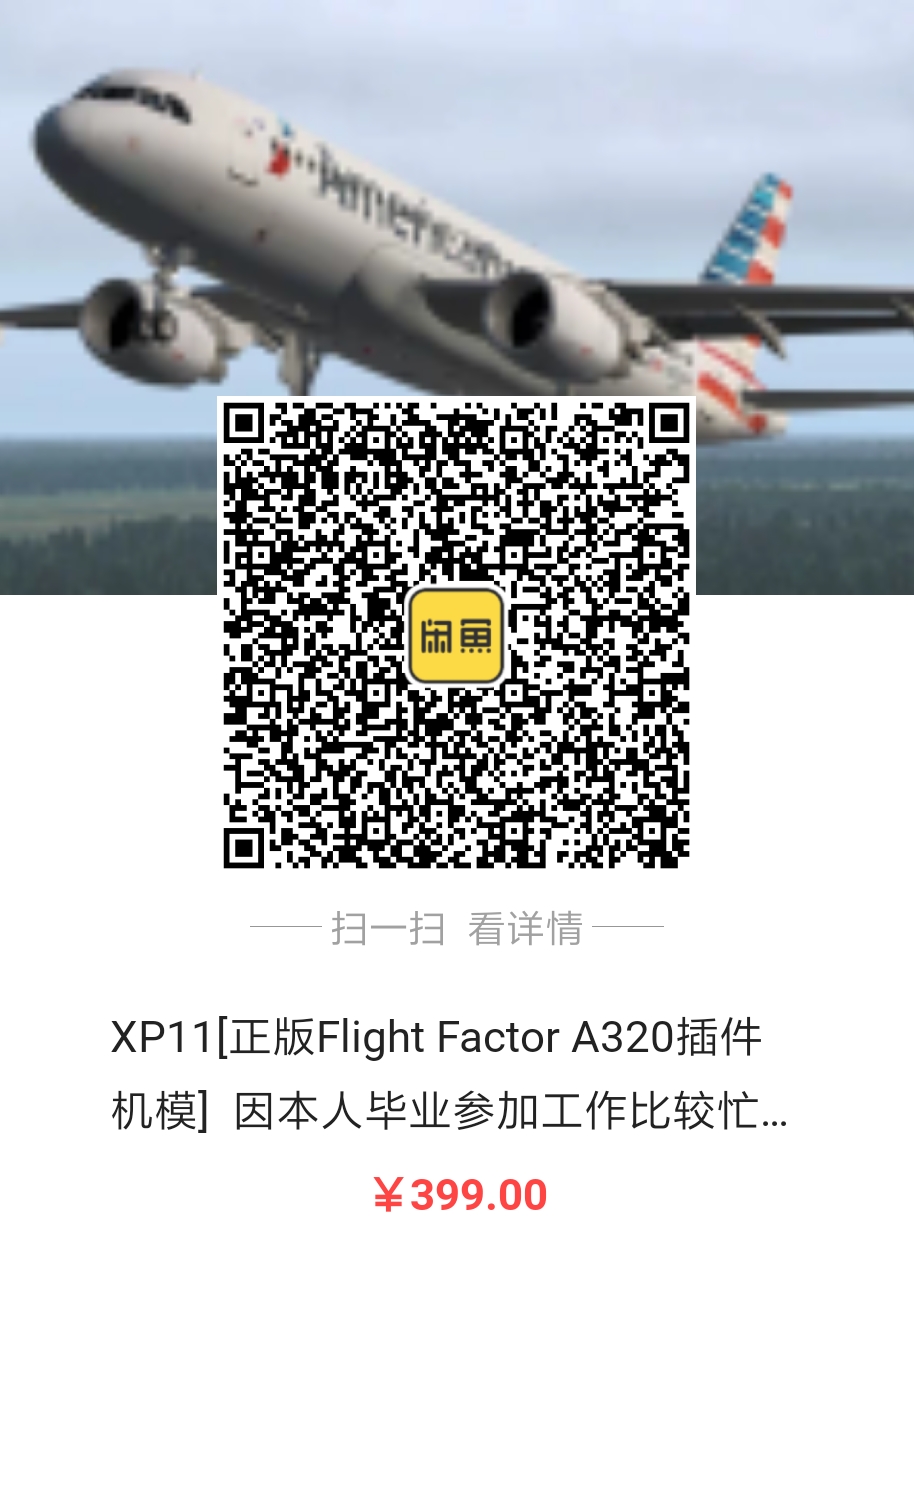 出售Flight Factor A320正版激活码，因毕业工作忙-8772 